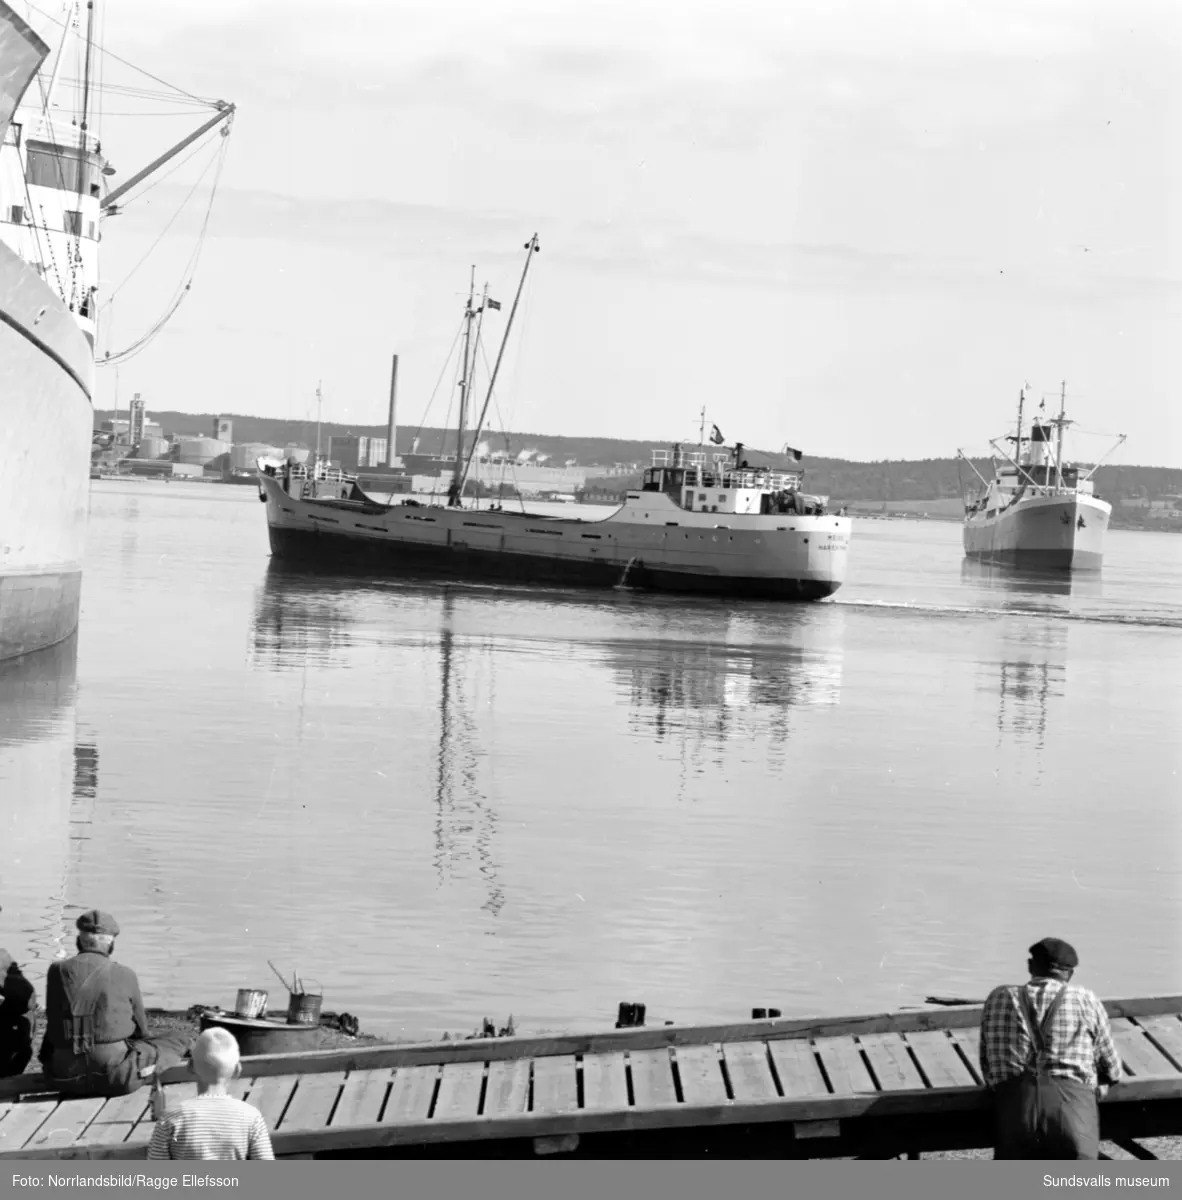 En grupp bilder från hamnen i Sundsvall med båtar och lastning, bland annat Minnesota.